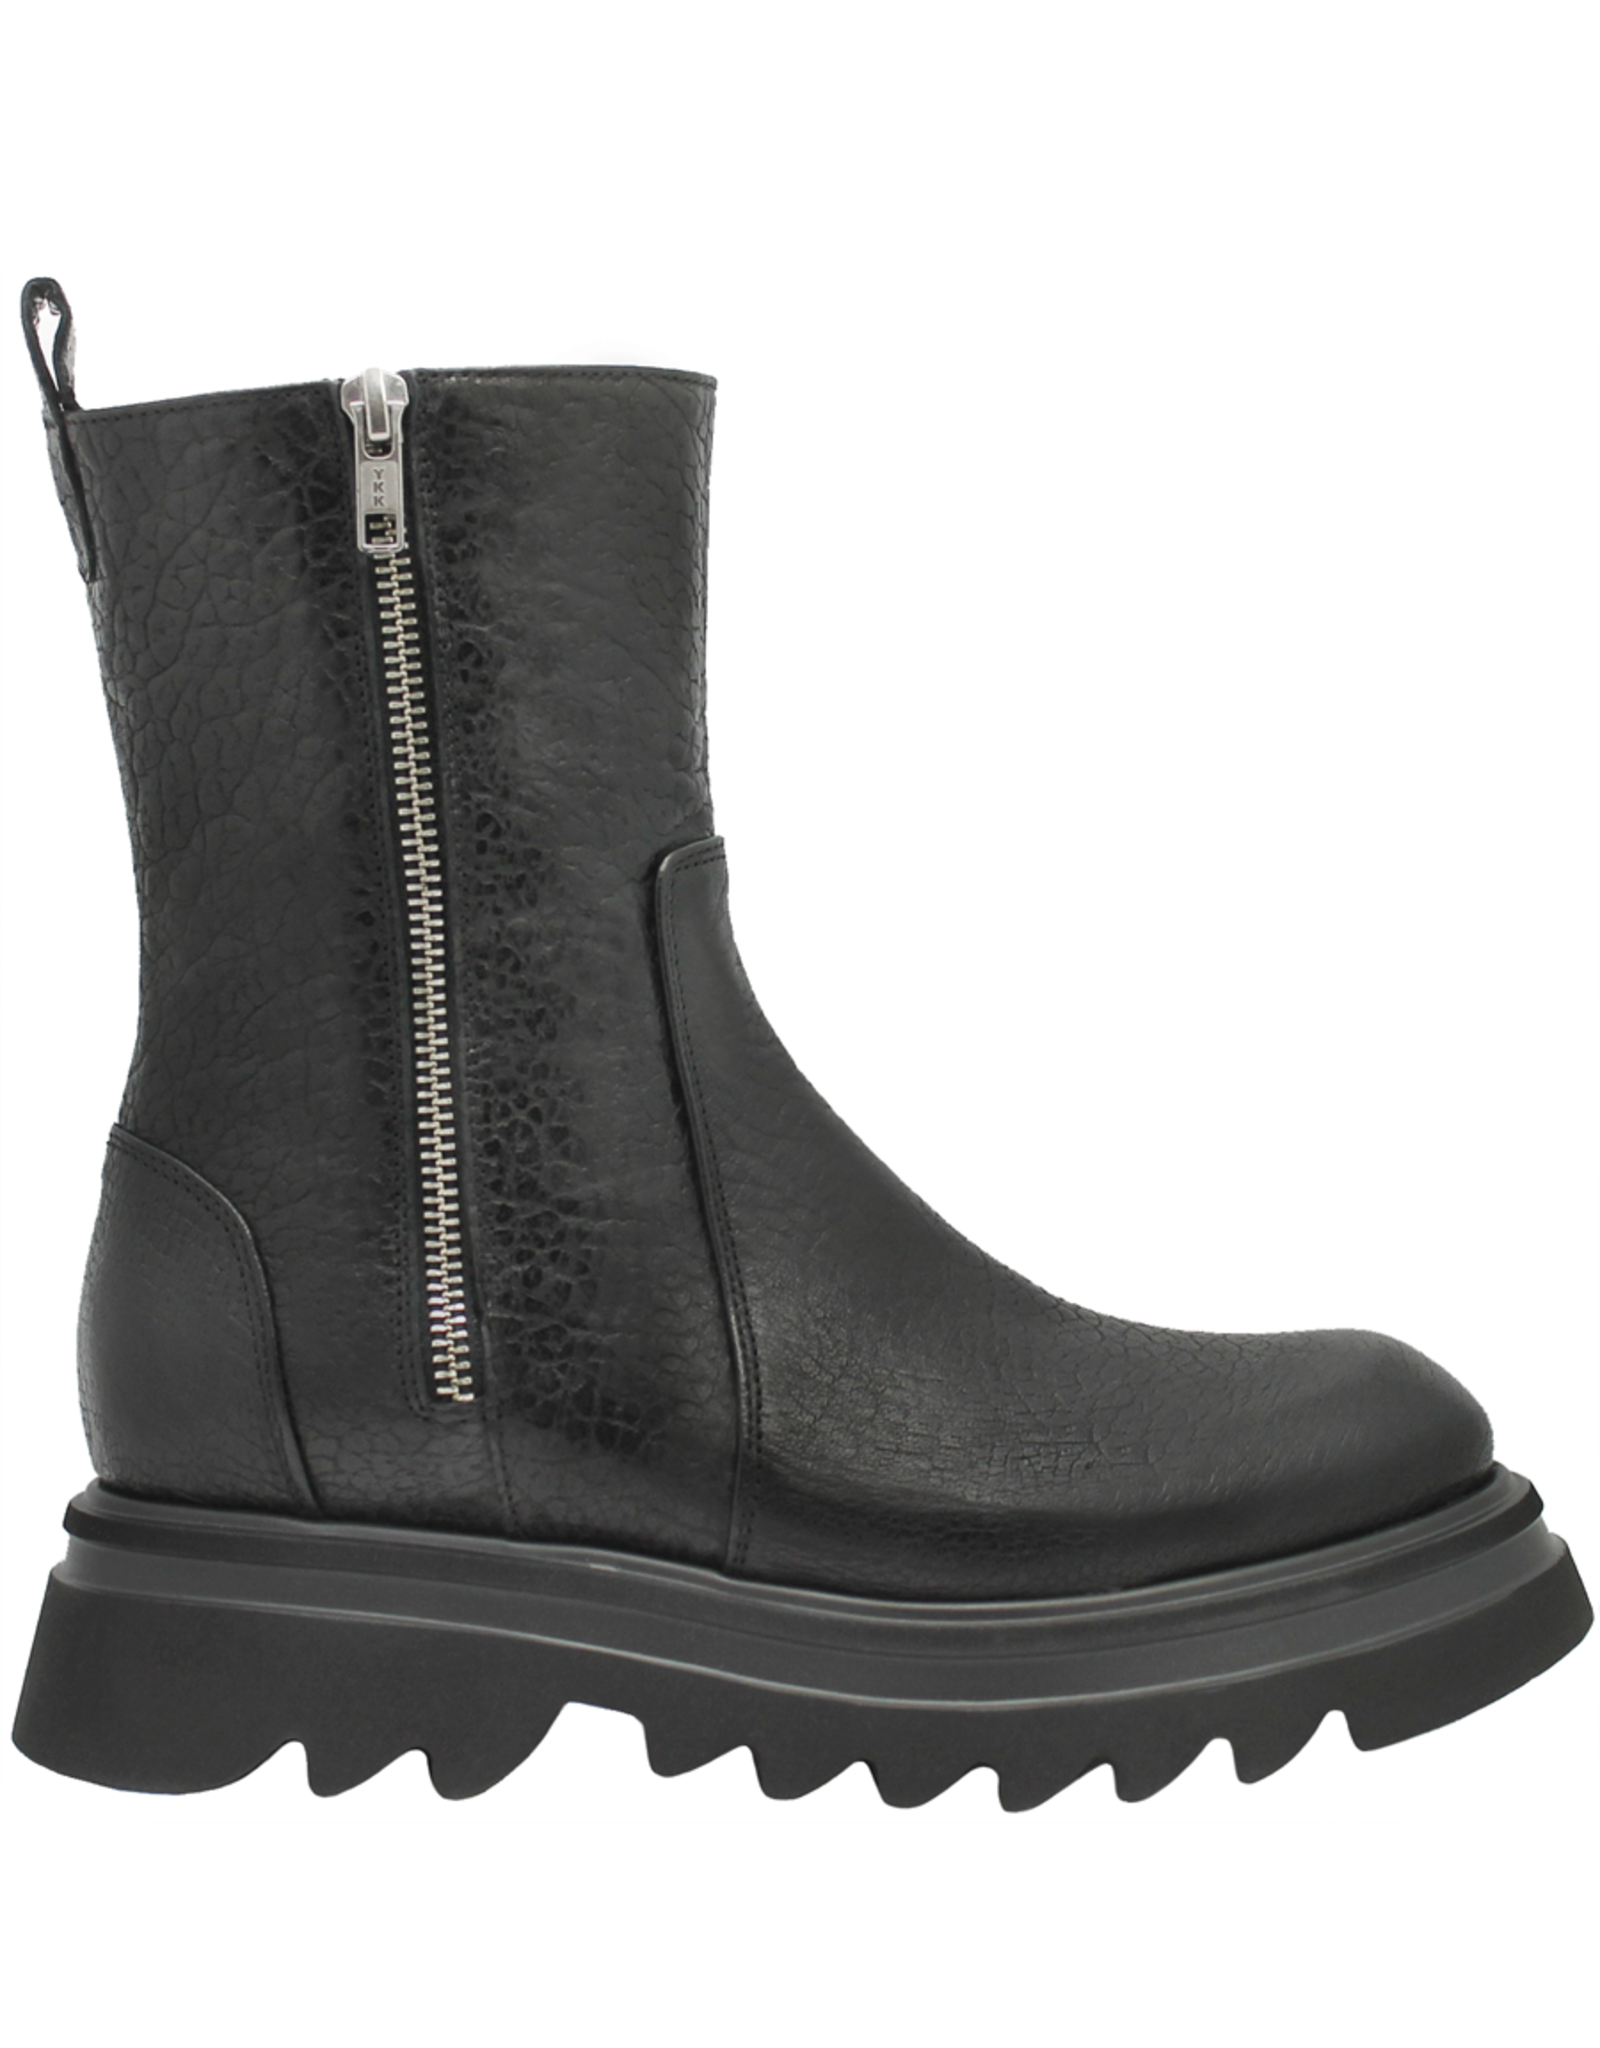 Now N42S Black Grain Leather Double Zipper Tread Sole 8400 - Head Start  Shoes